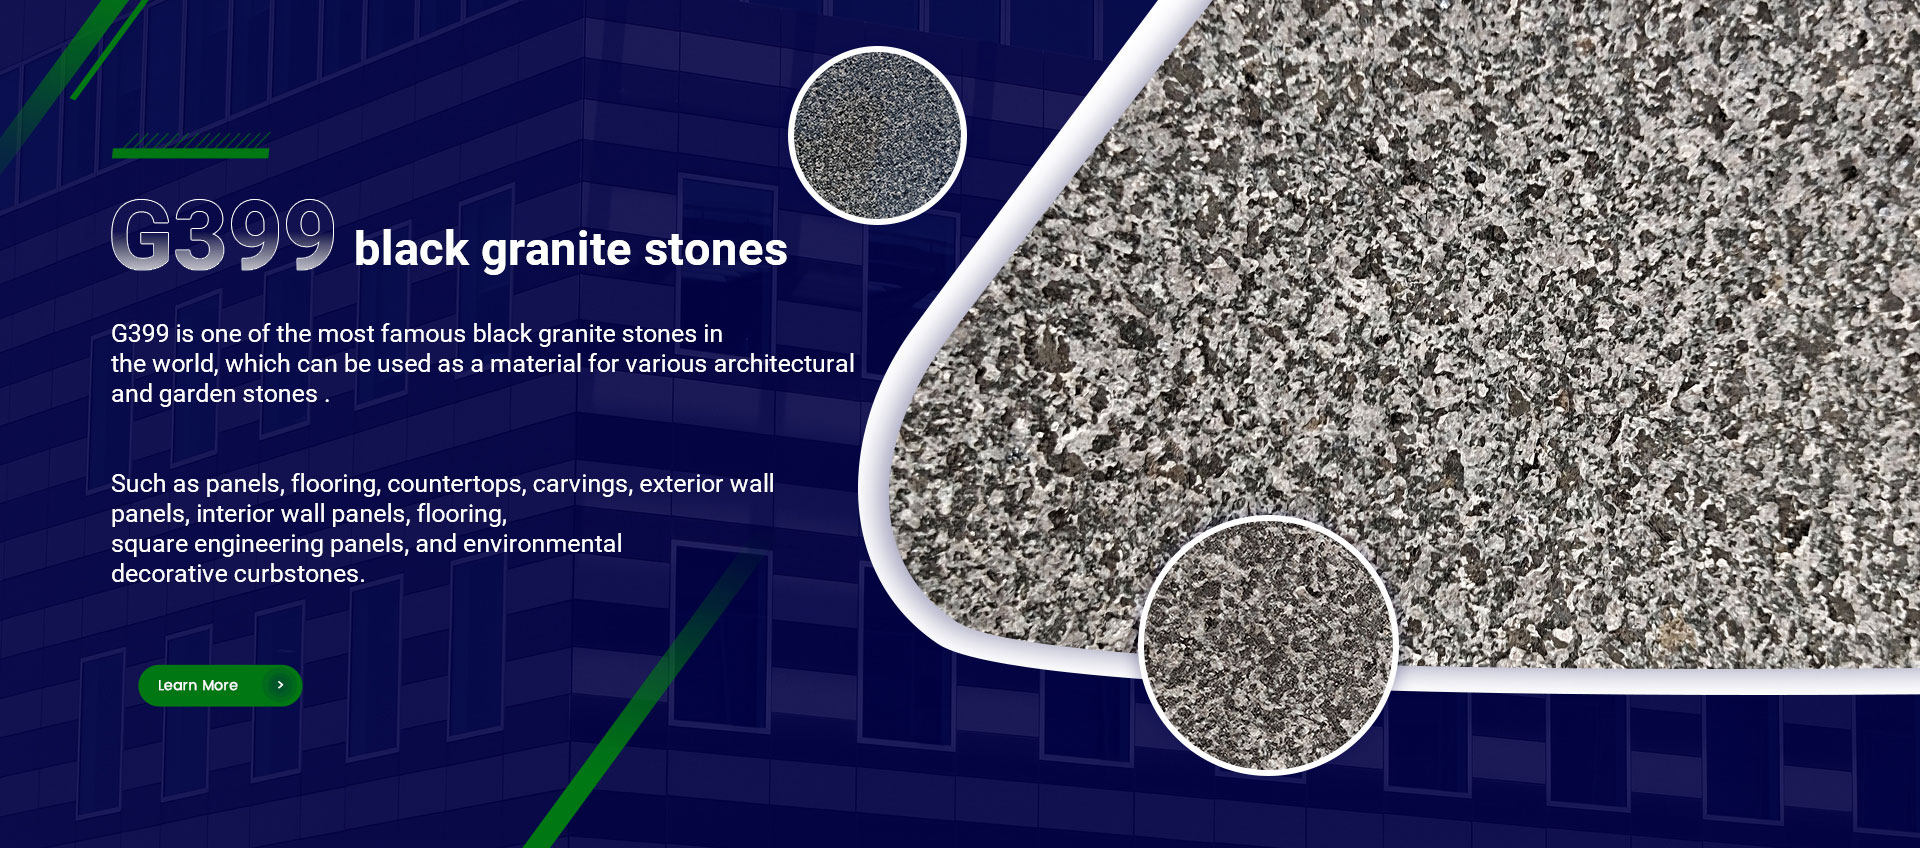 G399 black granite stones